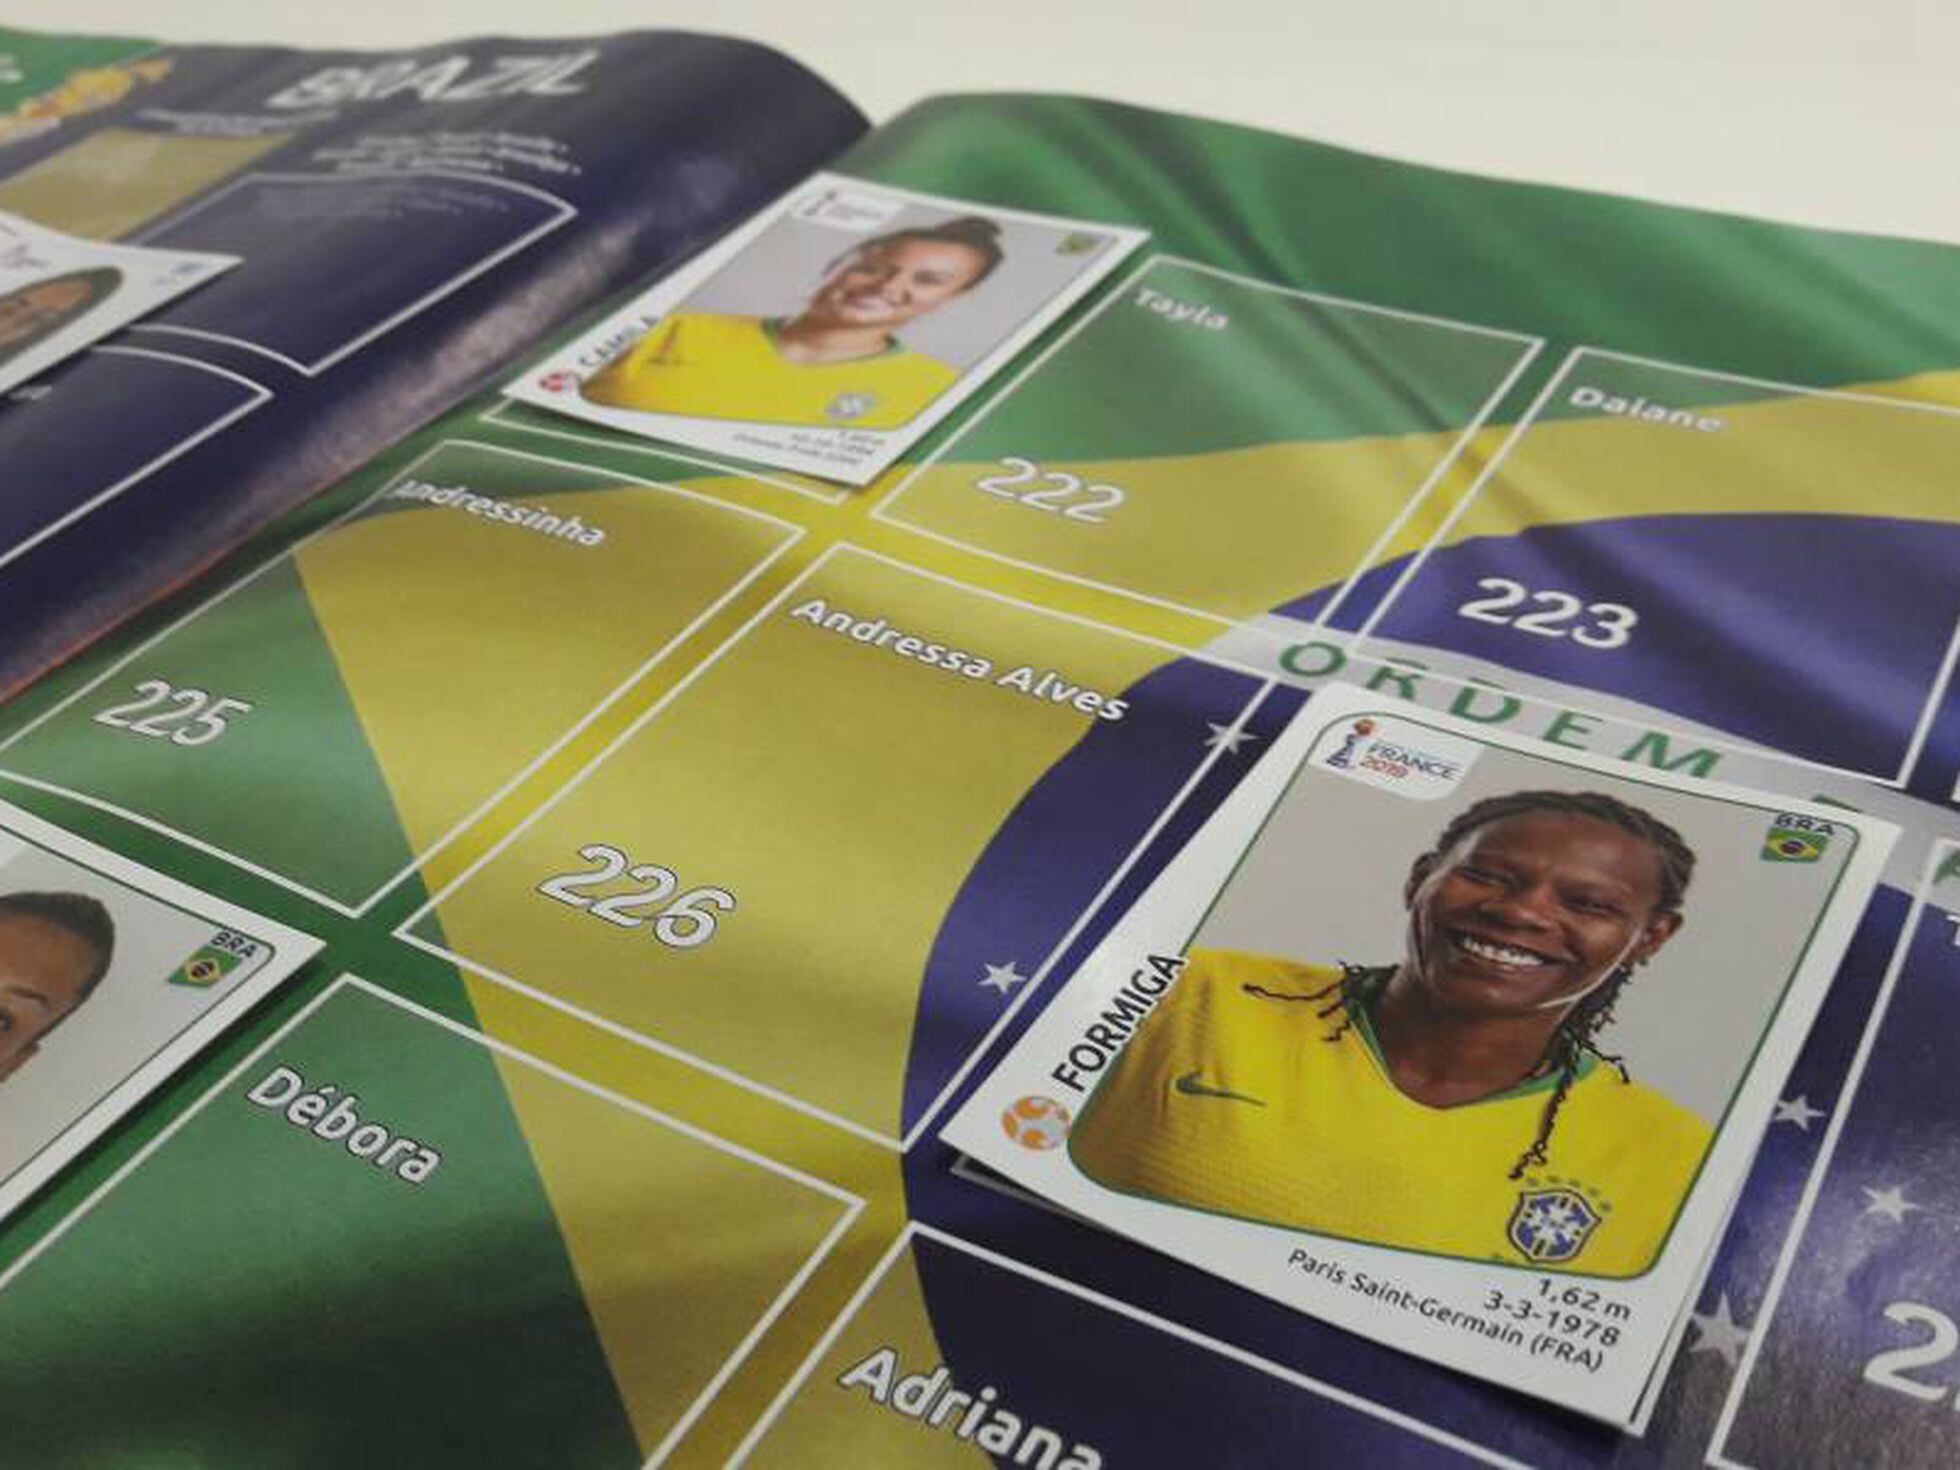 Copa América Feminina: os números do Brasil, campeão com 100% e